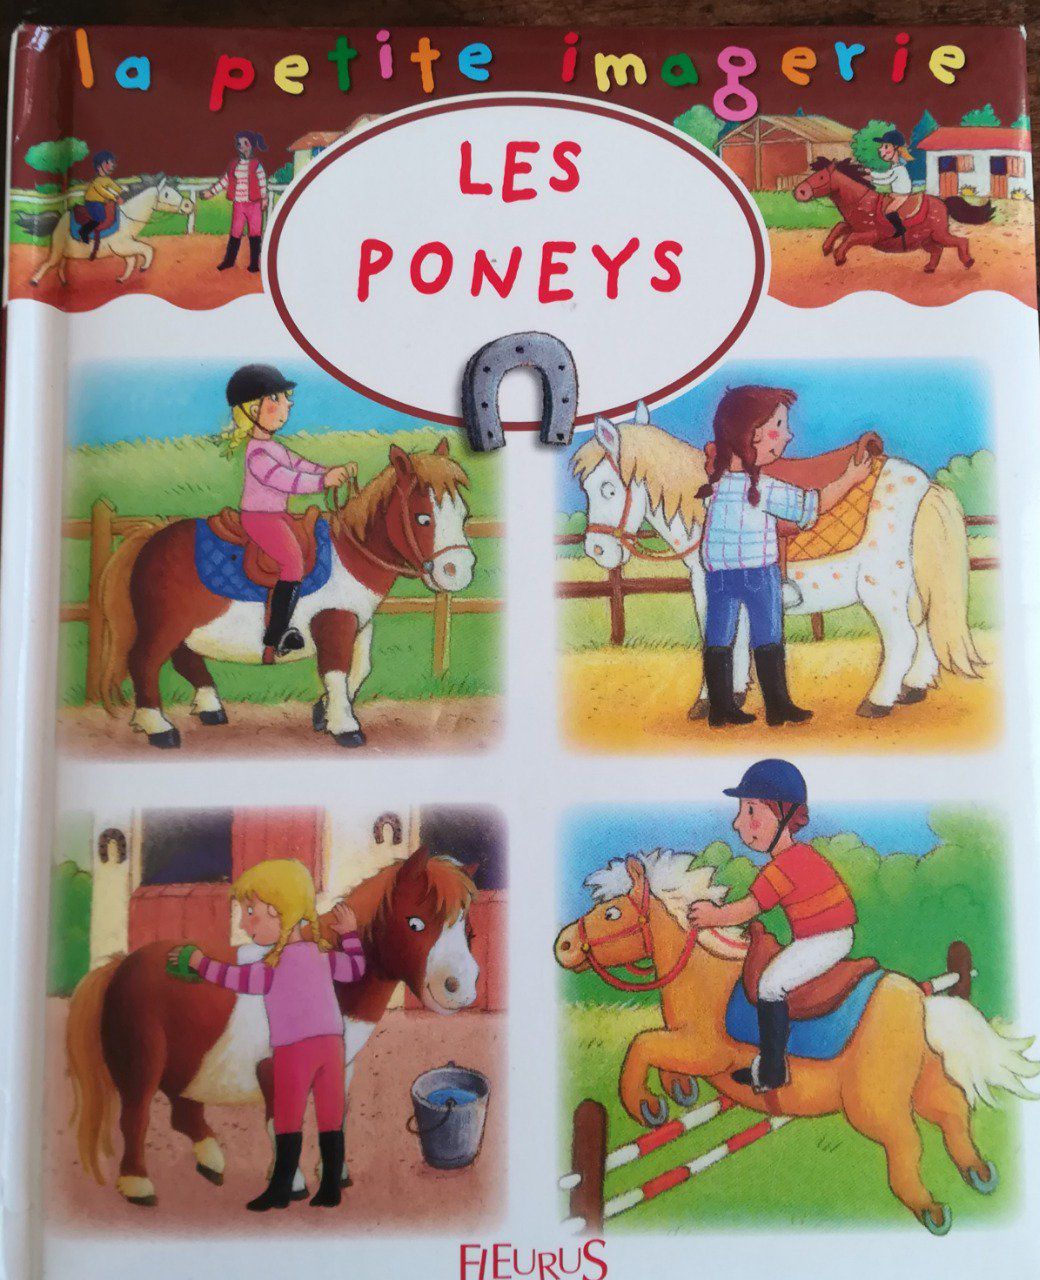 Les poneys, la petite imagerie